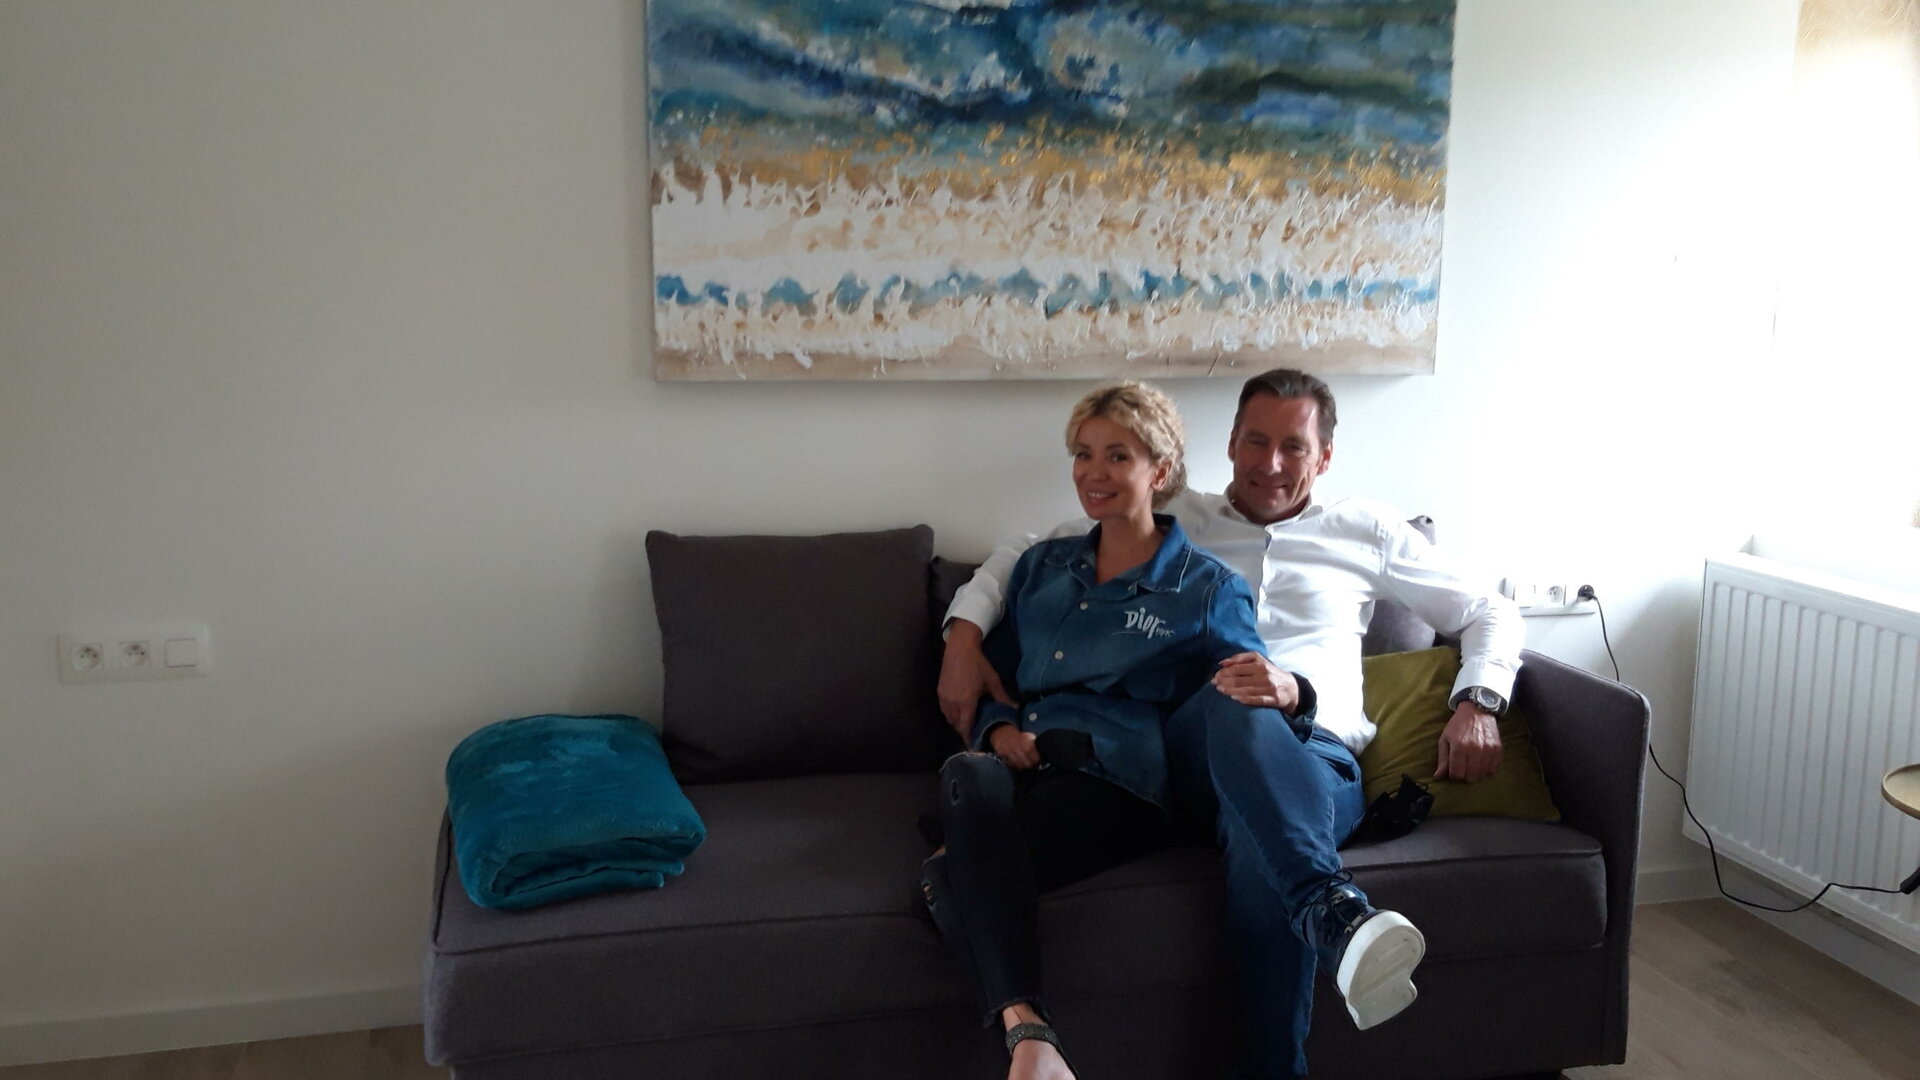 Vakantiewoning De Lokroep - sofa in slaapkamer 1ste verdiep met schilderij van Euroart